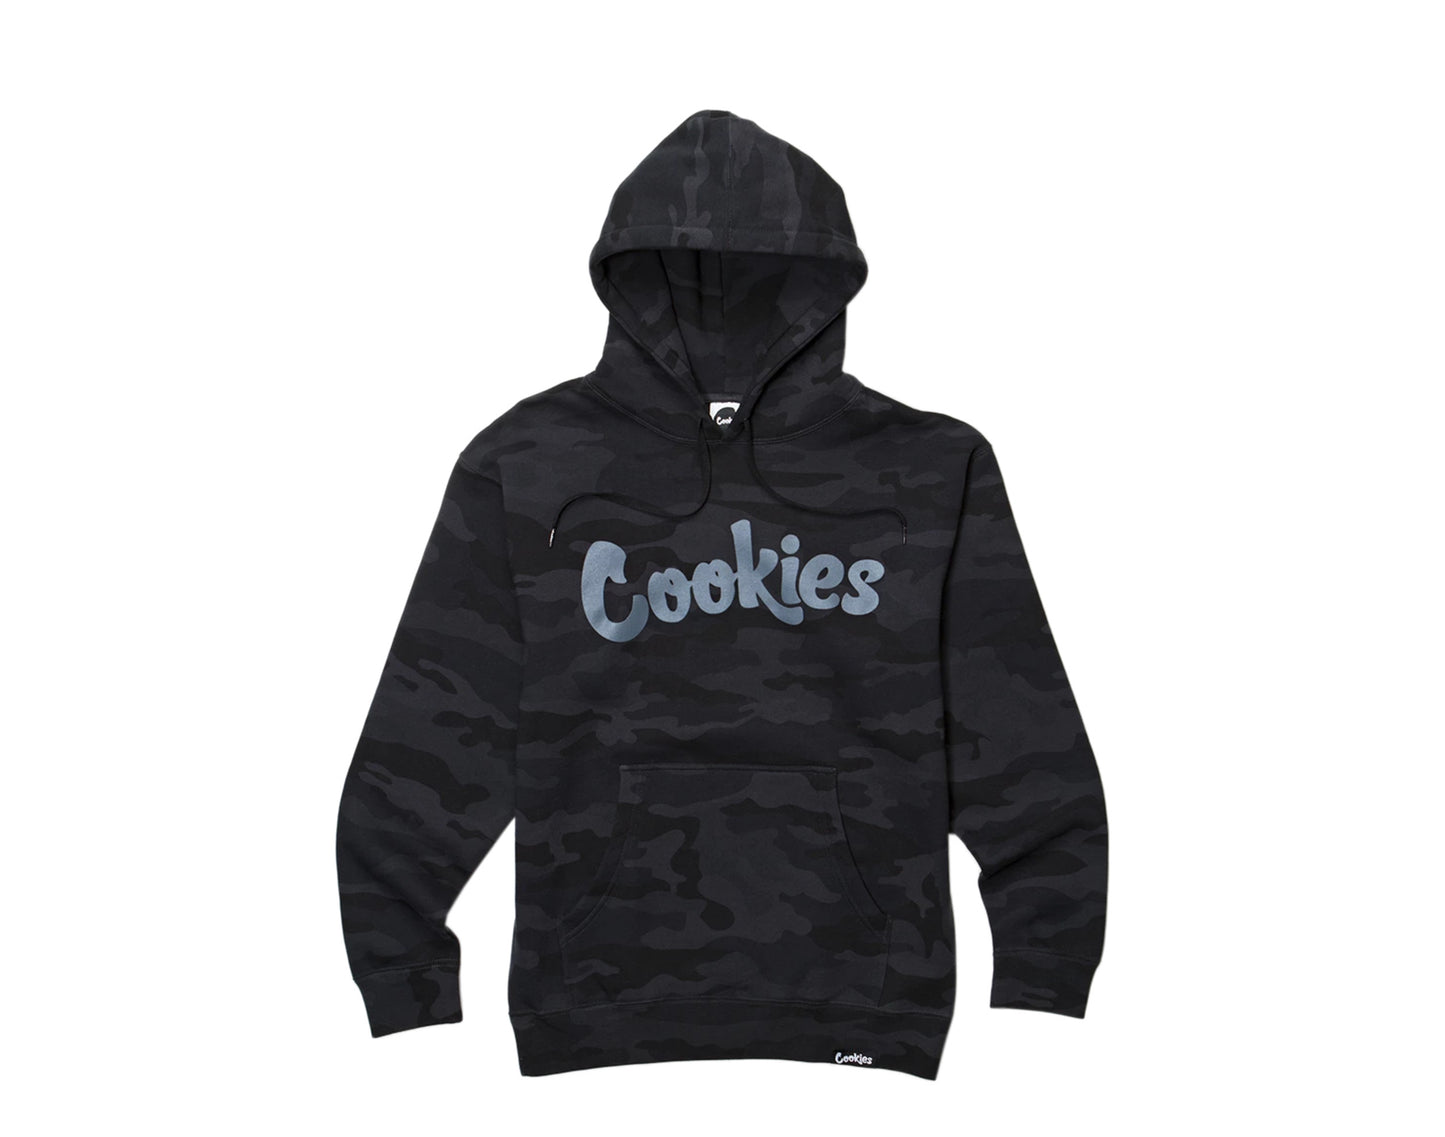 Cookies Original Logo Thin Mint Fleece Men's Hoodie